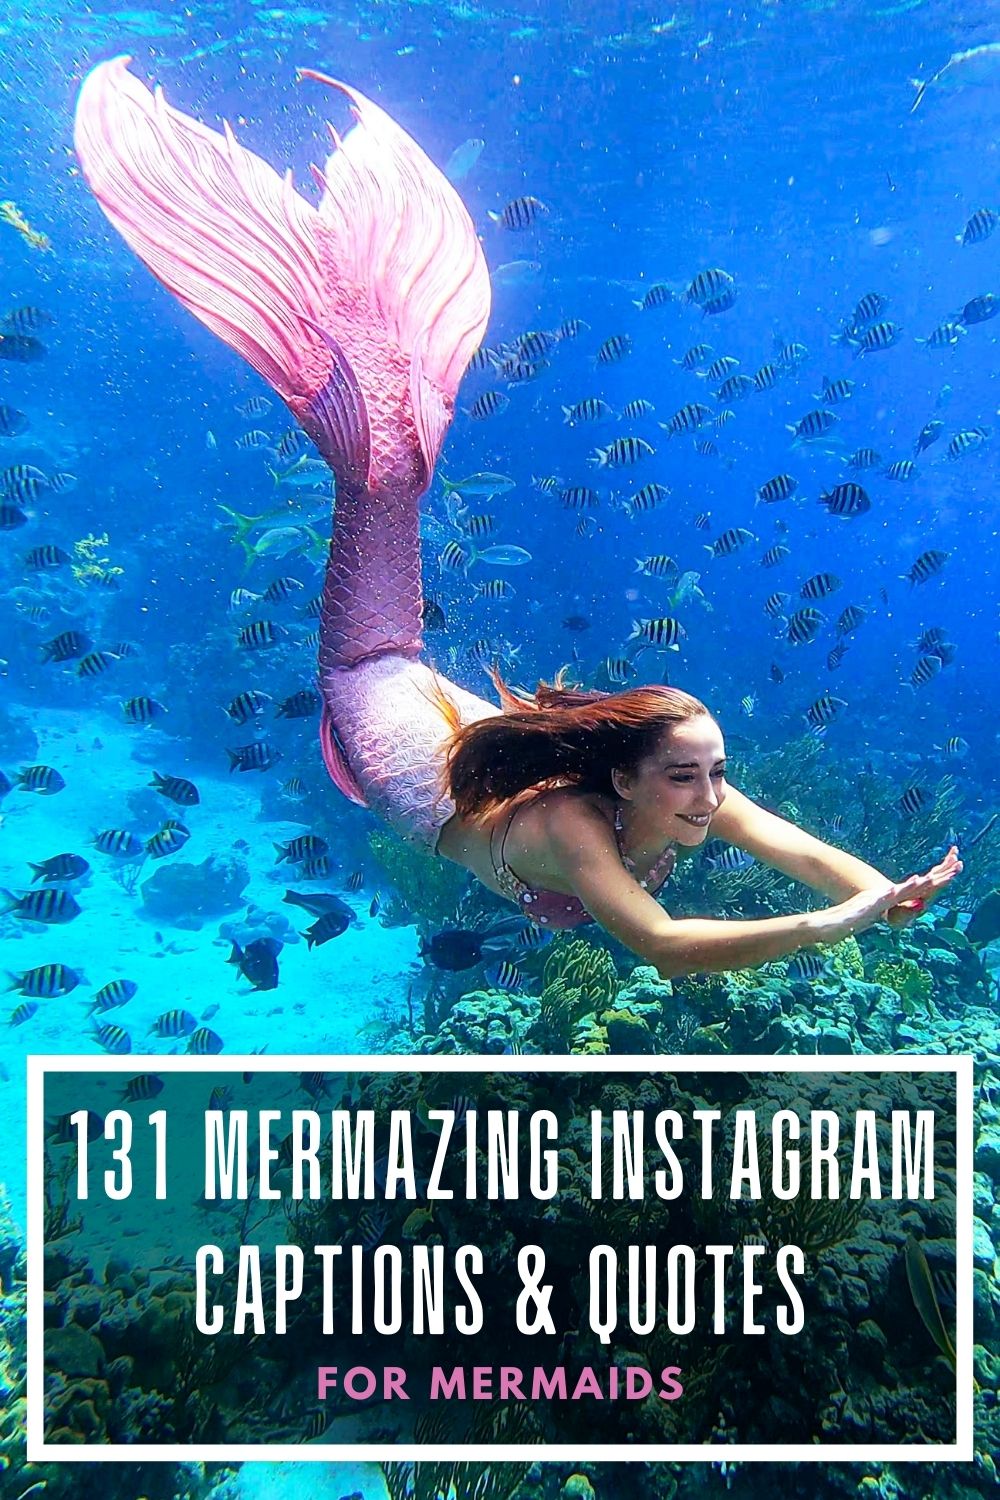 131 Mermazing Instagram Captions & Mermaid Quotes